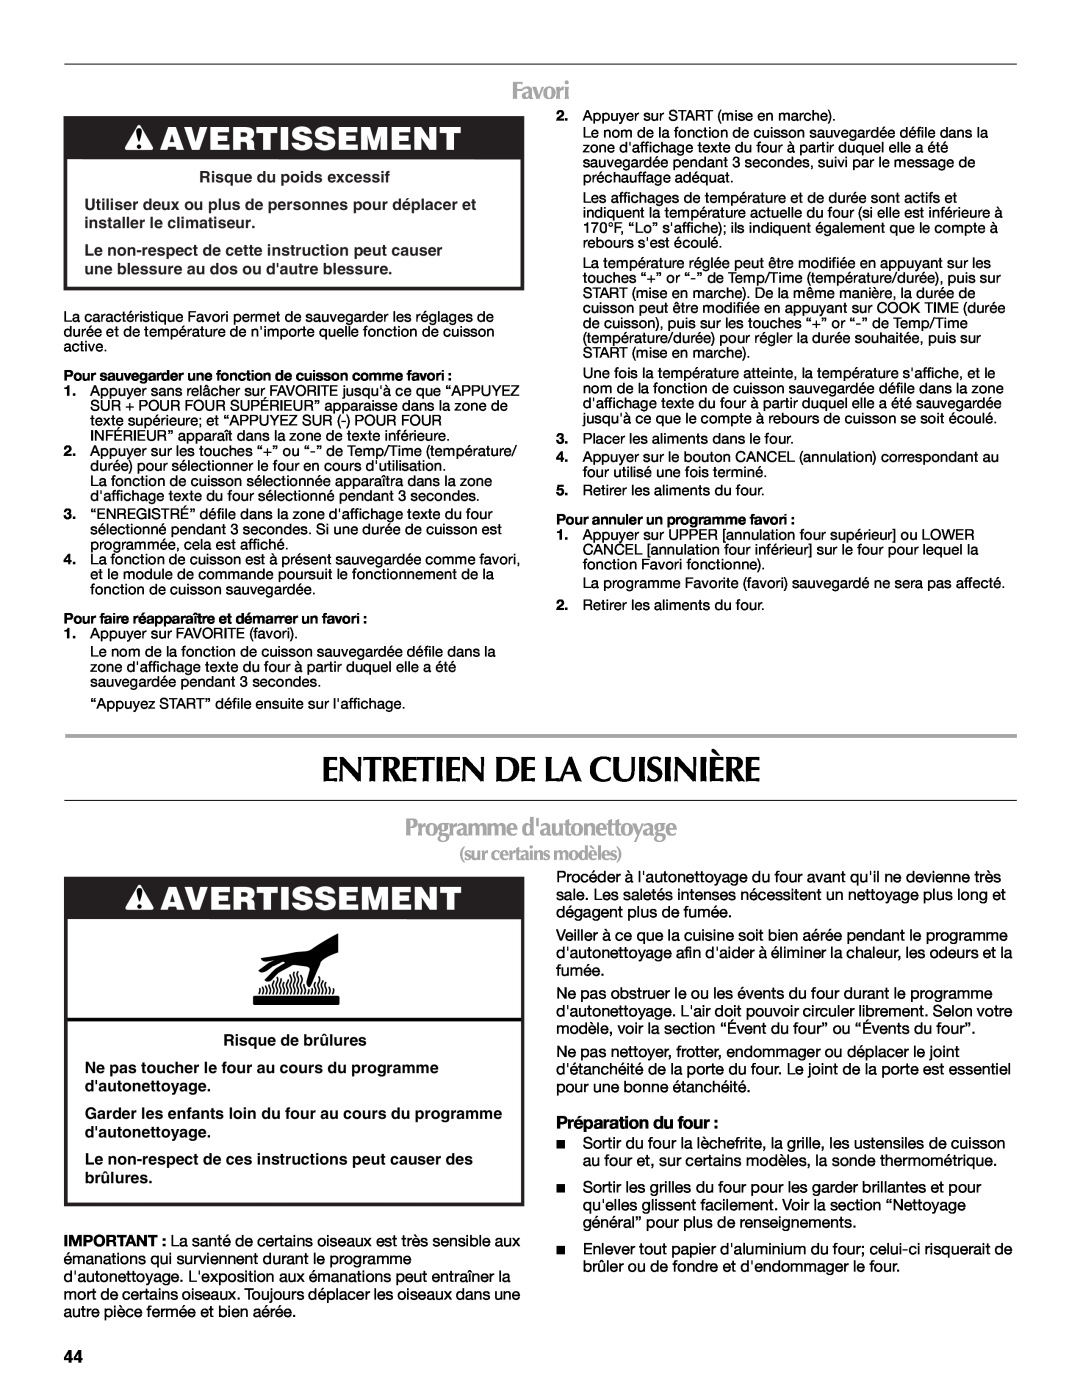 Maytag W10289539A manual Entretien De La Cuisinière, Favori, Programme dautonettoyage, Préparation du four, Avertissement 